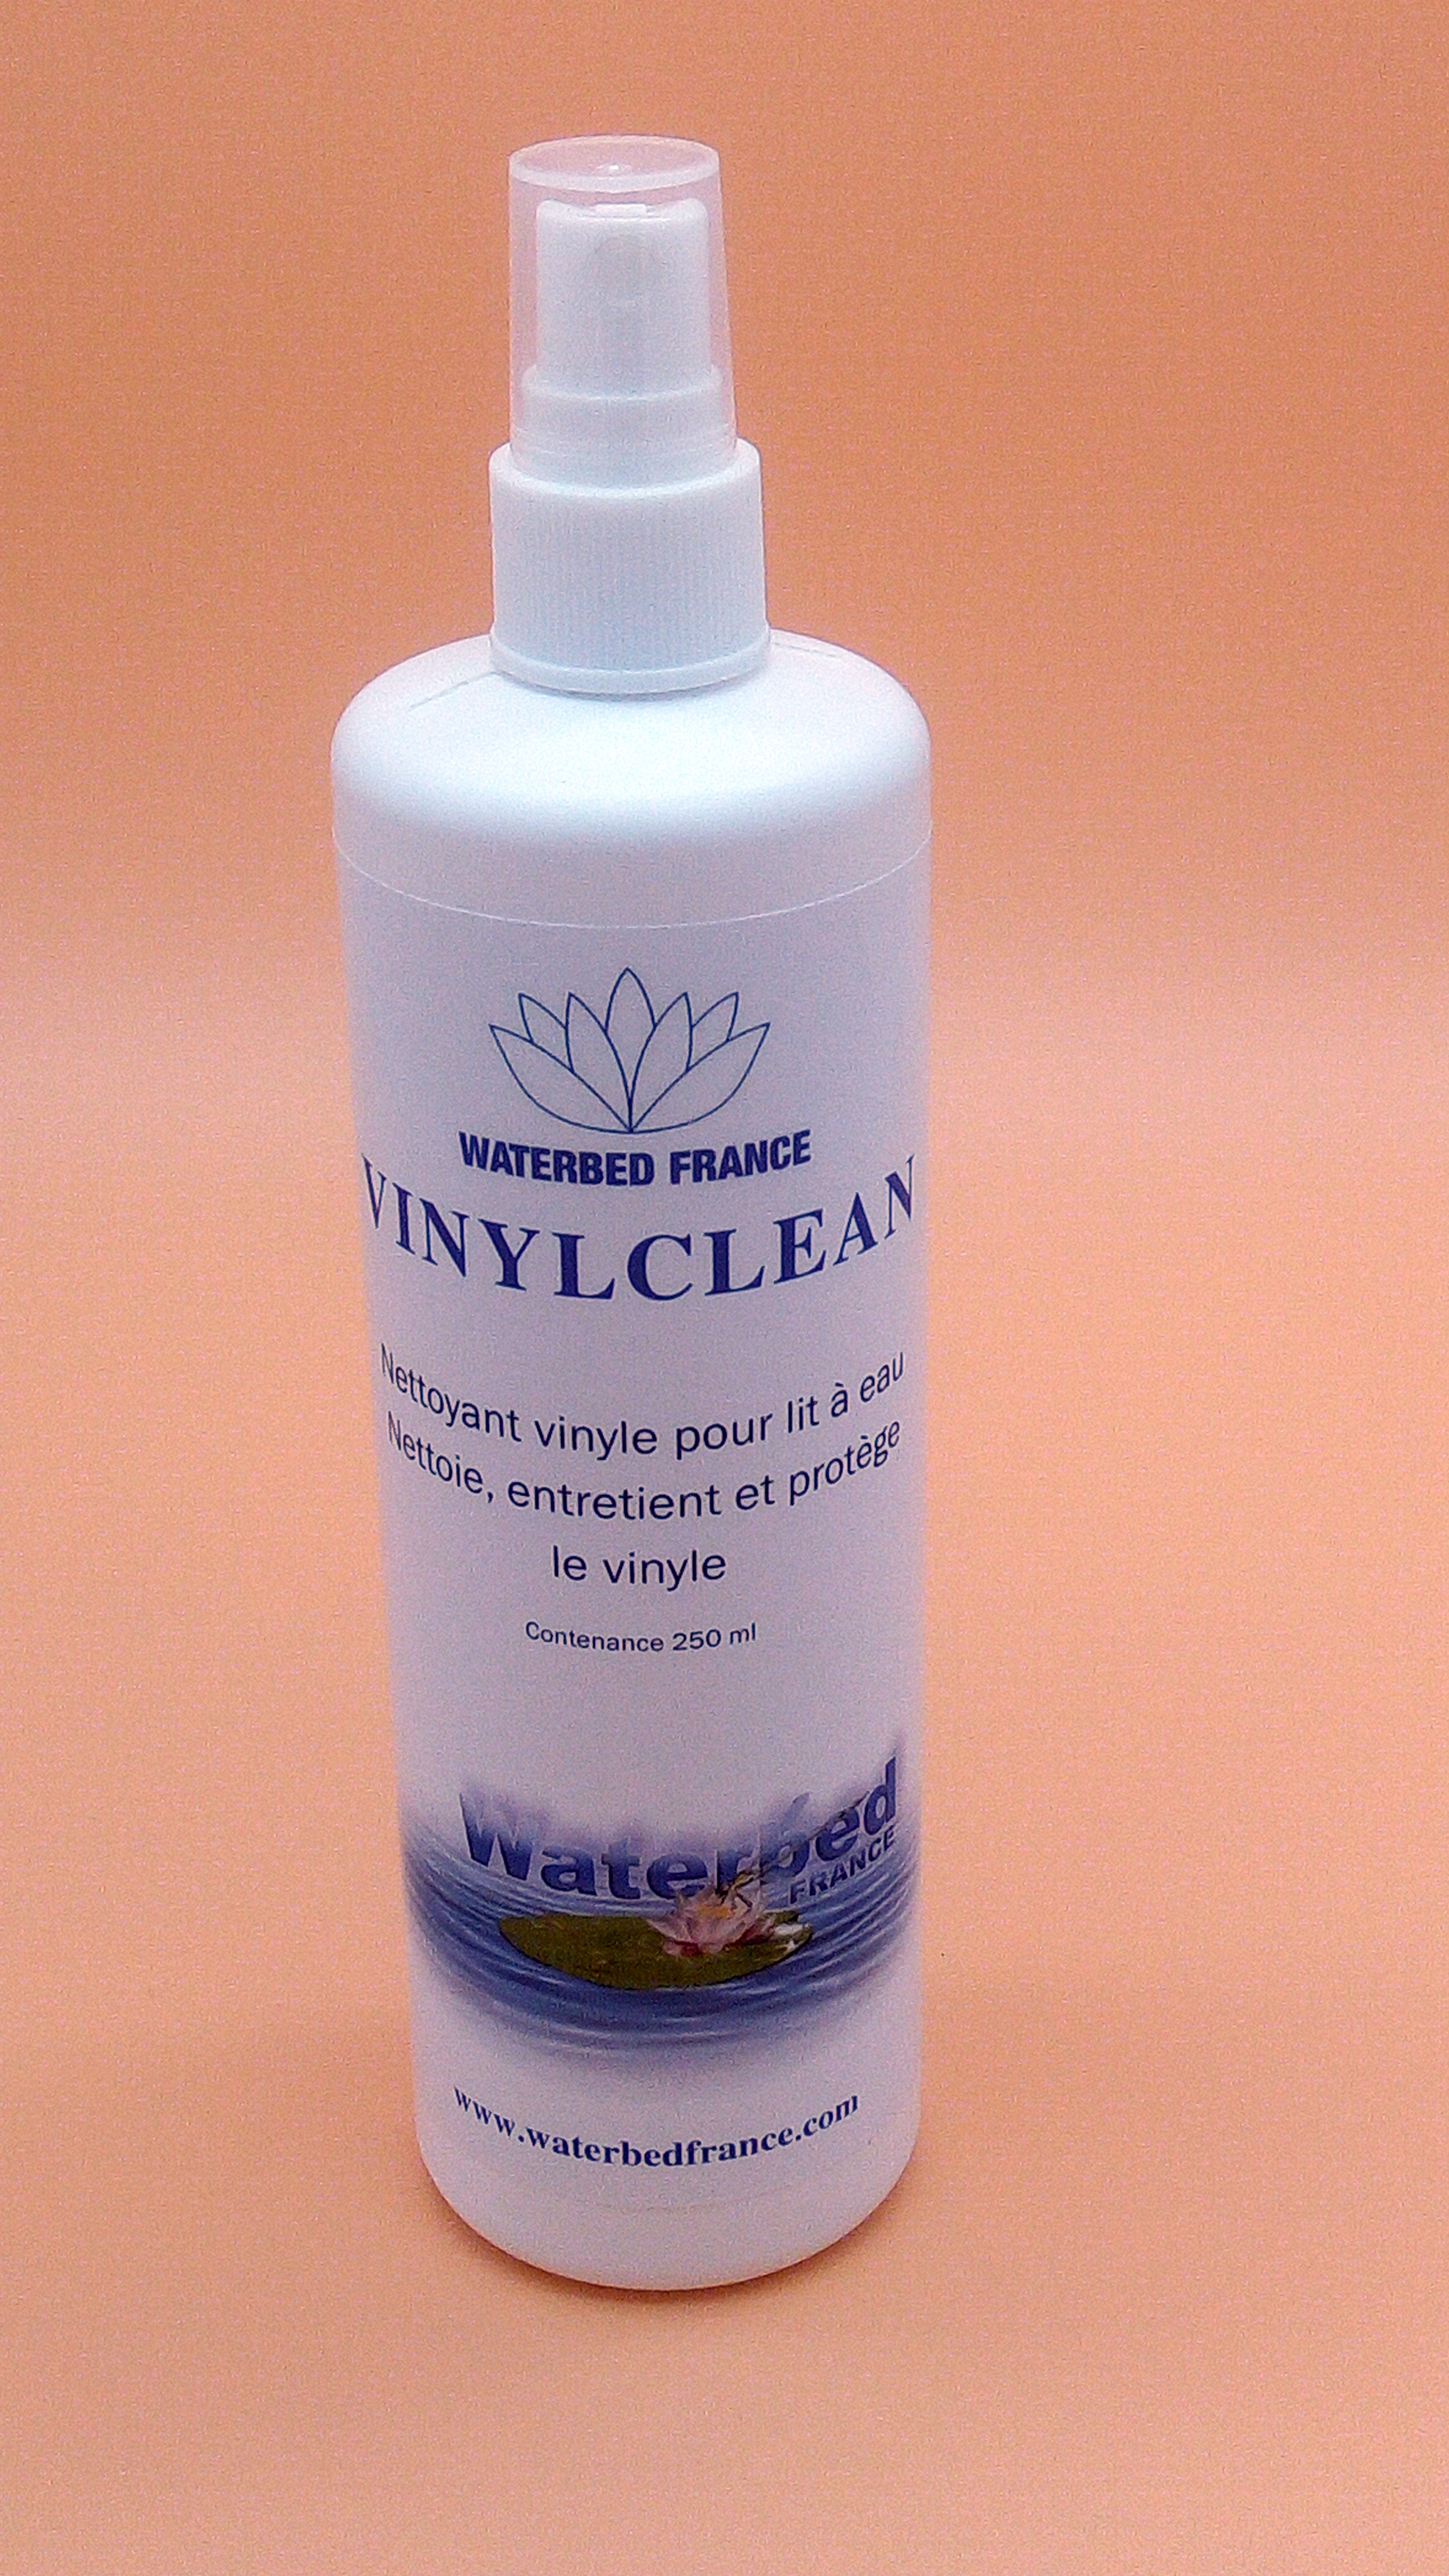 Vinylclean by Waterbed France, nettoyant vinyle pour lit à eau, en spray